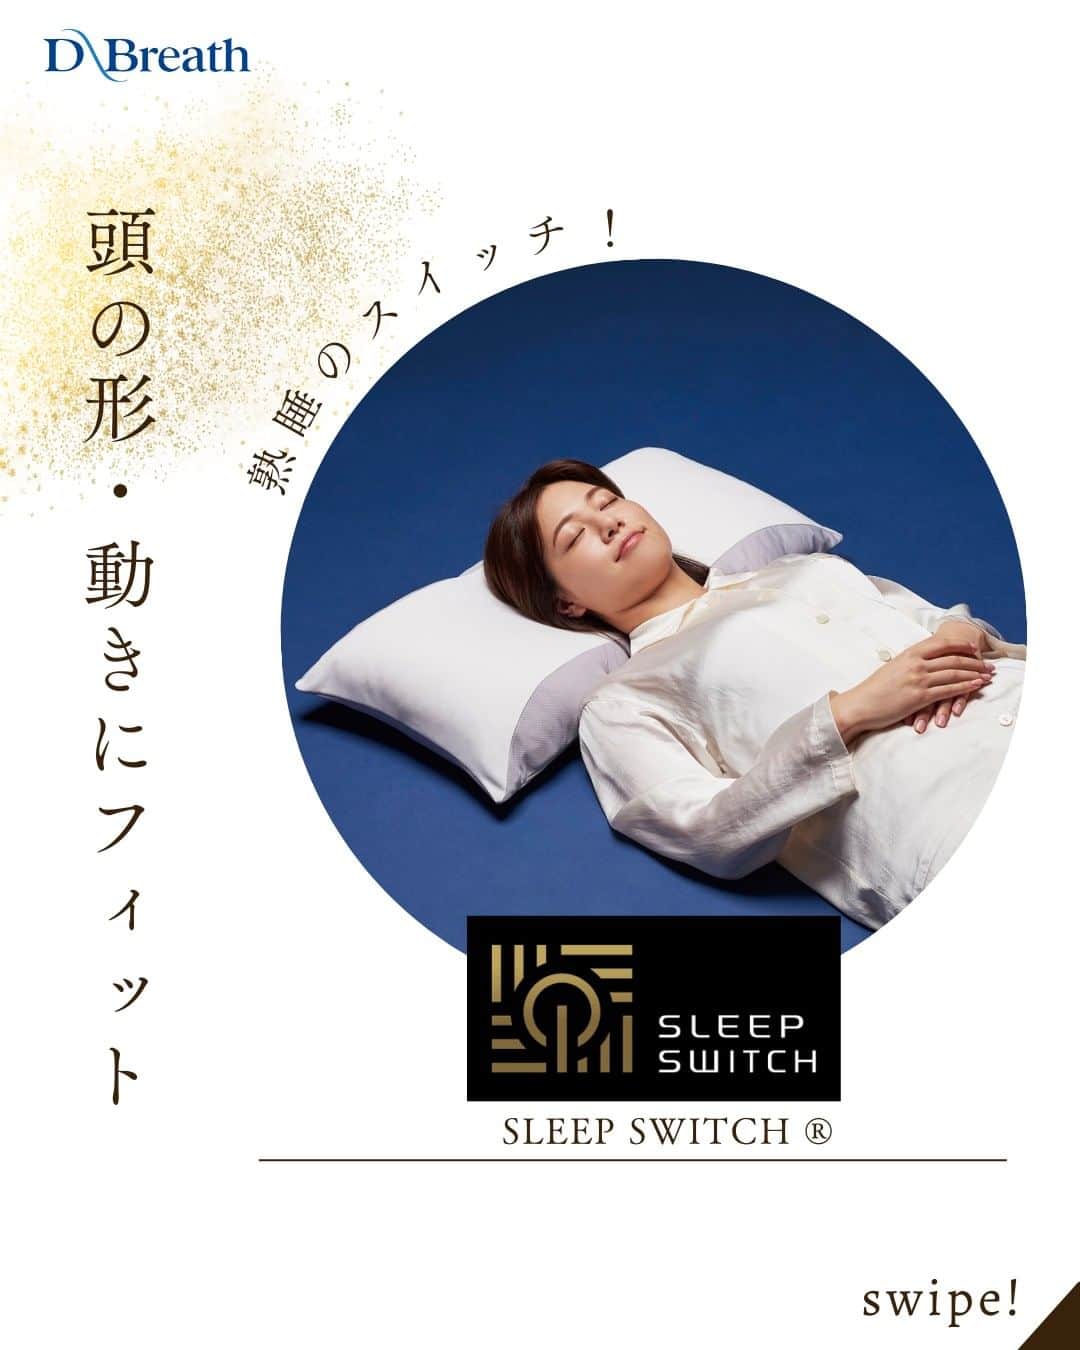 D-Breath Co., Ltd. のインスタグラム：「>>>続きをみる  こんばんは！ ディーブレスです！ @d_breath.co.jp  SLEEP SWITCH®は こだわりの独自構造で頭の形・動きにフィット😊  あらゆる体型の方を正しい寝姿勢に！  快眠のために大切なことは、寝返りをしても自然な寝姿勢を保つことです🌙 頭の形、寝返りなどでの動きにフィットして安定感のある いい寝心地に仕上げています！  ぜひお試しください…！  ┄ ┄ ┄ ┄ ┄ ┄ ┄ ┄ ┄ ┄ ┄ ┄ ┄  どこよりも気持ちいい寝具を目指す🌙  ディーブレスという社名は、 DEEP BREATH＝深呼吸という言葉から生まれました。  あわただしい暮らしの中で、深呼吸するように、 ゆったりとした時を過ごしていただきたいという想いから、 様々な心安らぐアイテムを開発しています。 ┄ ┄ ┄ ┄ ┄ ┄ ┄ ┄ ┄ ┄ ┄ ┄ ┄ このアカウントでは ・起きたばかりなのに身体がだるおも ・夜なかなか寝付けない ・朝スッキリ起きれない  という方に向けて 睡眠の知識を発信中！  ＼フォローして最上級の眠りを手に入れる／ @d_breath.co.jp  #自律神経 #睡眠 #睡眠の改善 #睡眠不足 #快眠 #更年期 #ストレス #疲労回復 #肩こり解消 #自律神経失調症 #自律神経ケア #自律神経を整える #ストレスケア #睡眠の質をあげる #ディーブレス #スリープスイッチ ​#SLEEPSWITCH​  #オリジナルピロー #新生活グッズ」